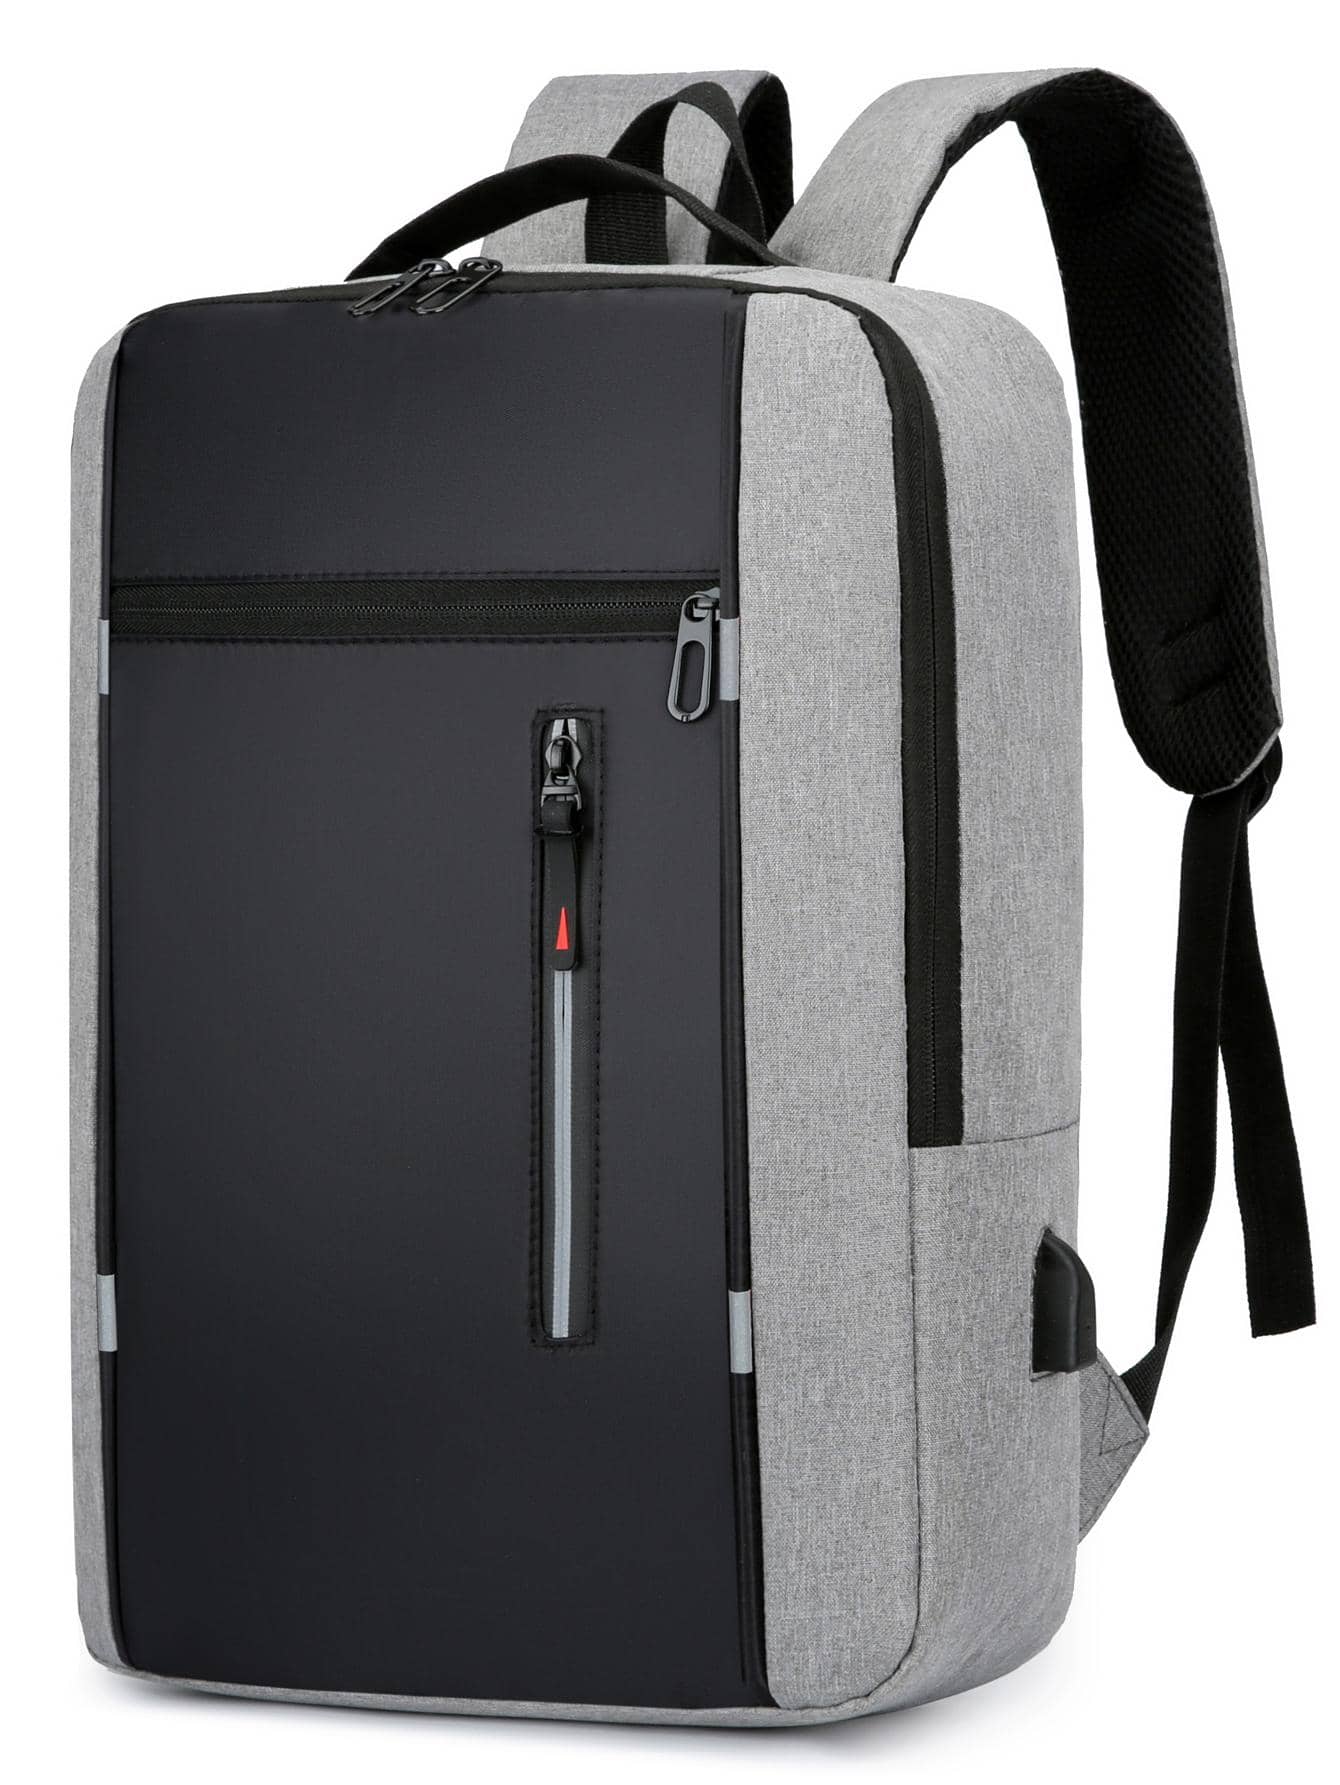 Рюкзак ноутбука Колорблок 15, серый мужской женский рюкзак для ноутбука с usb портом для зарядки